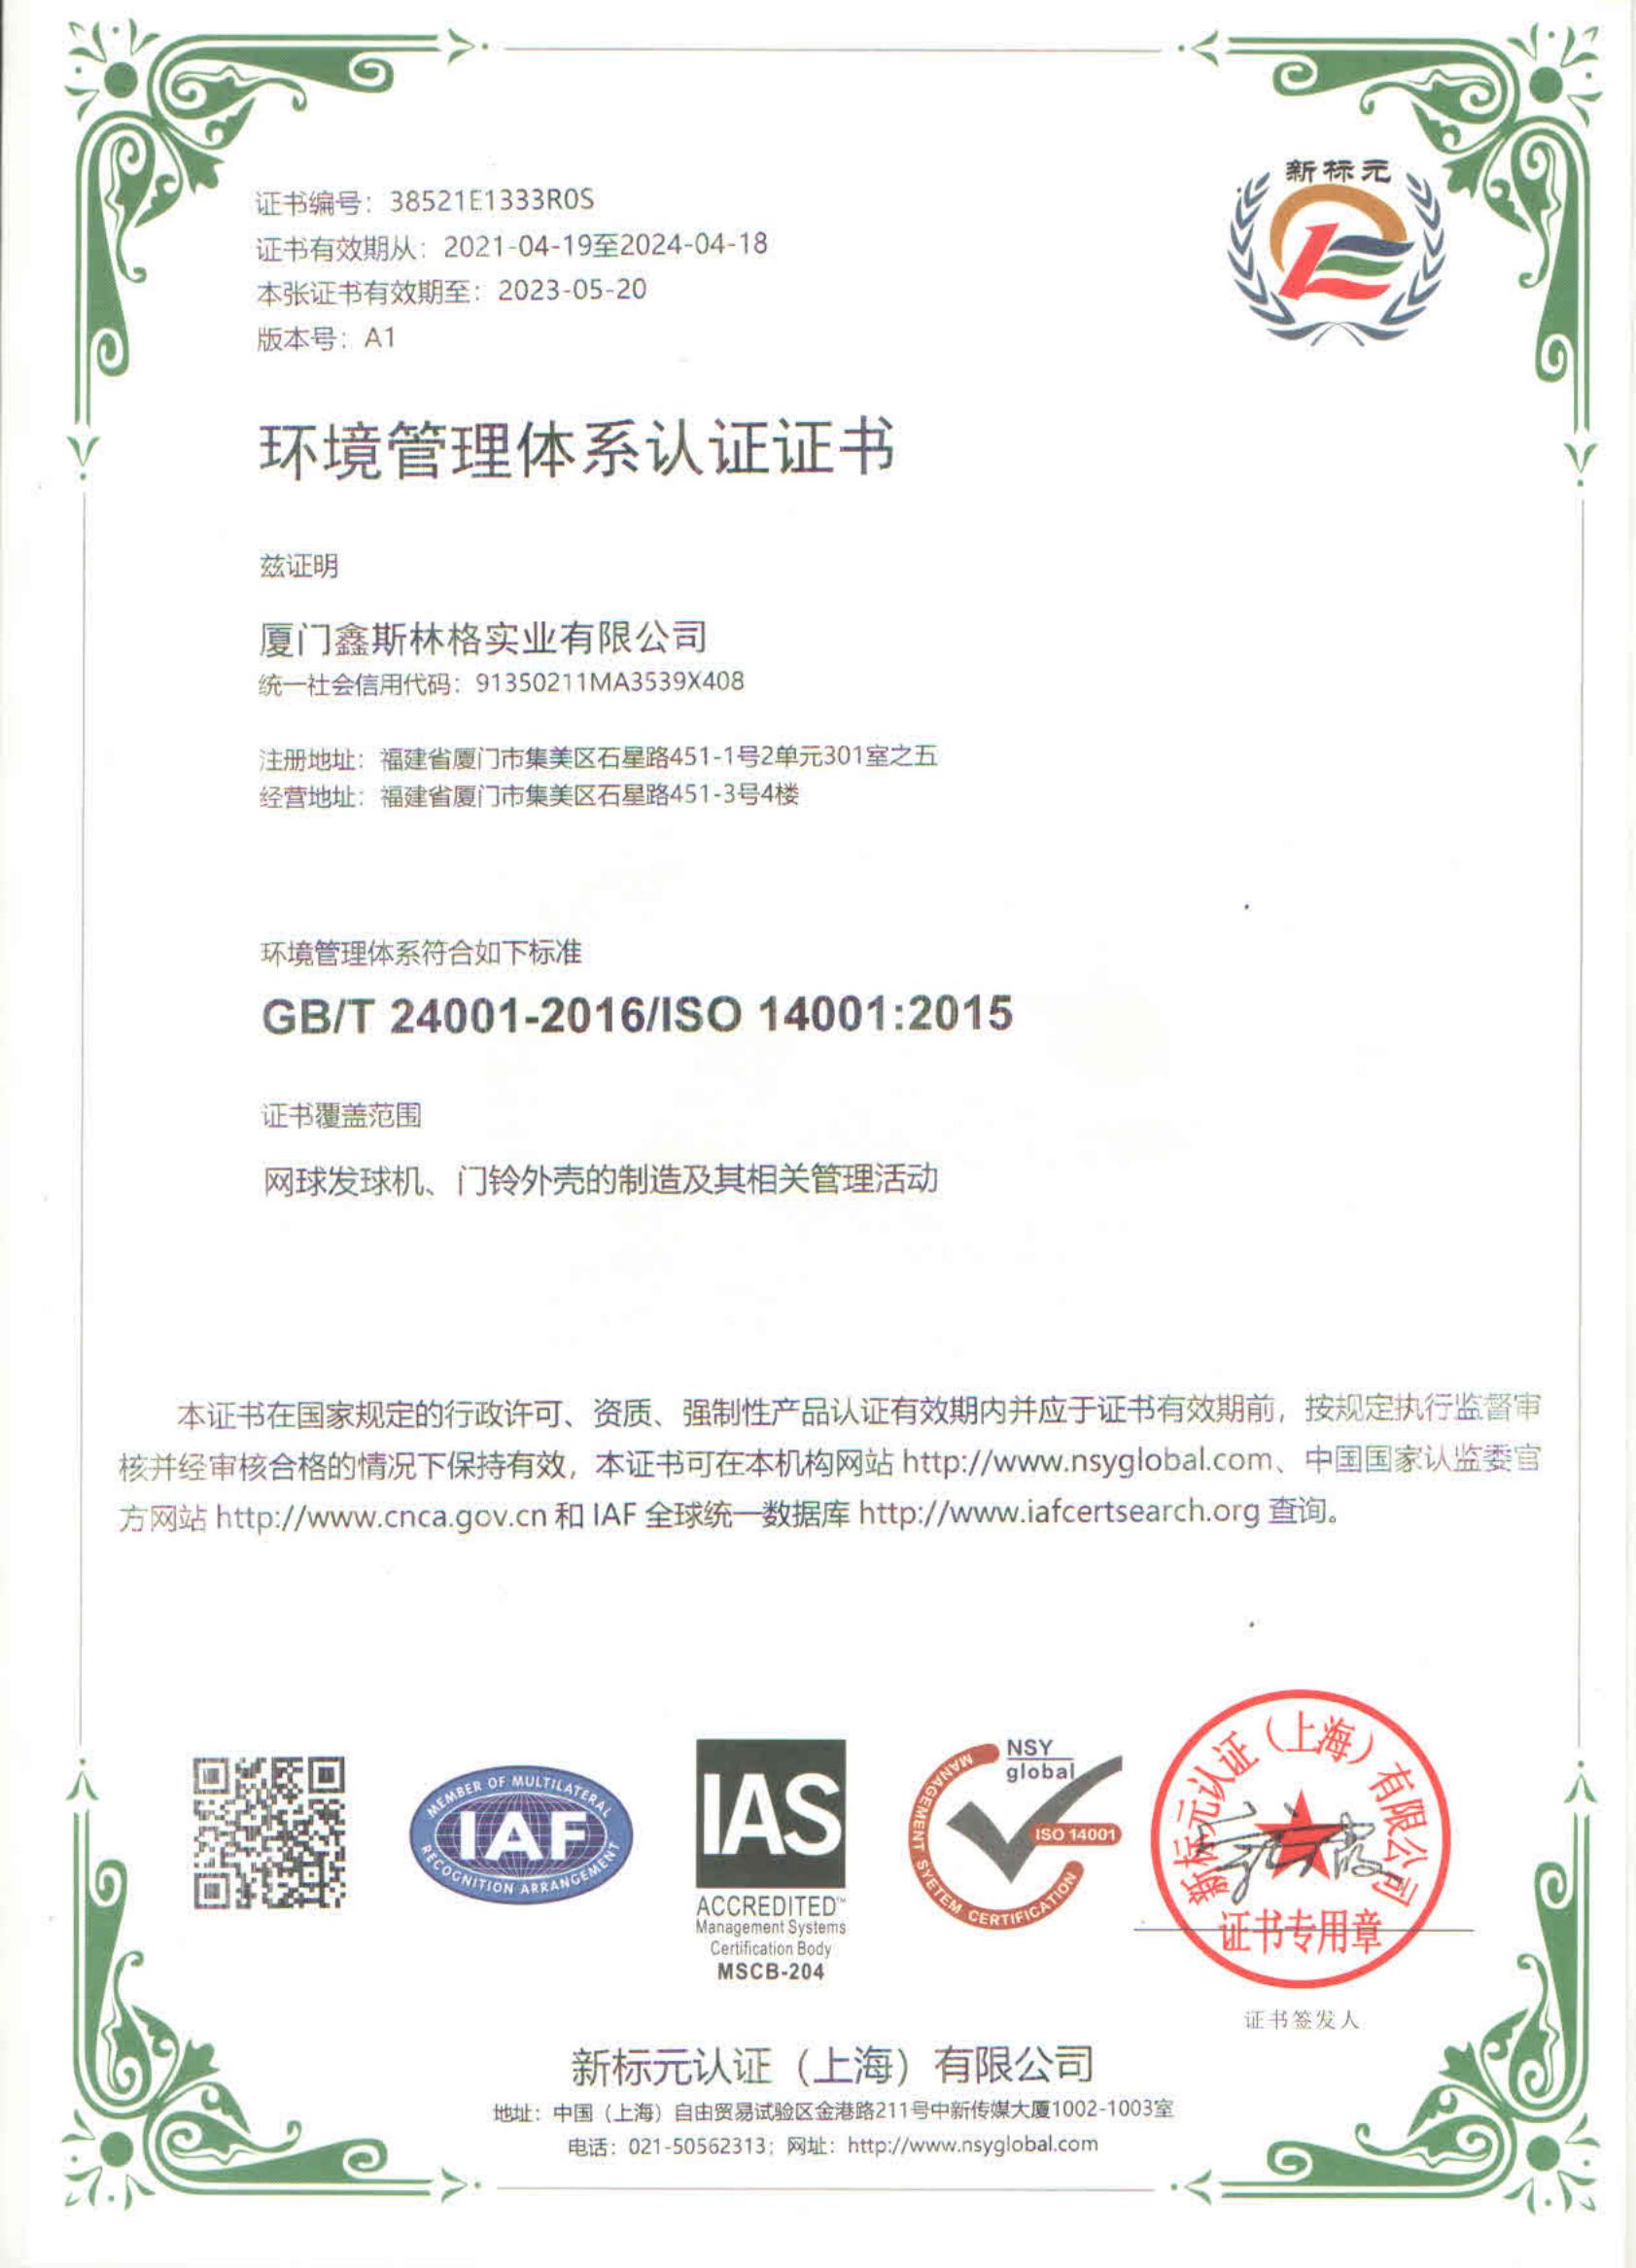 鑫斯林格 --- 环境管理体系认证证书 ISO 14001 中英文_00